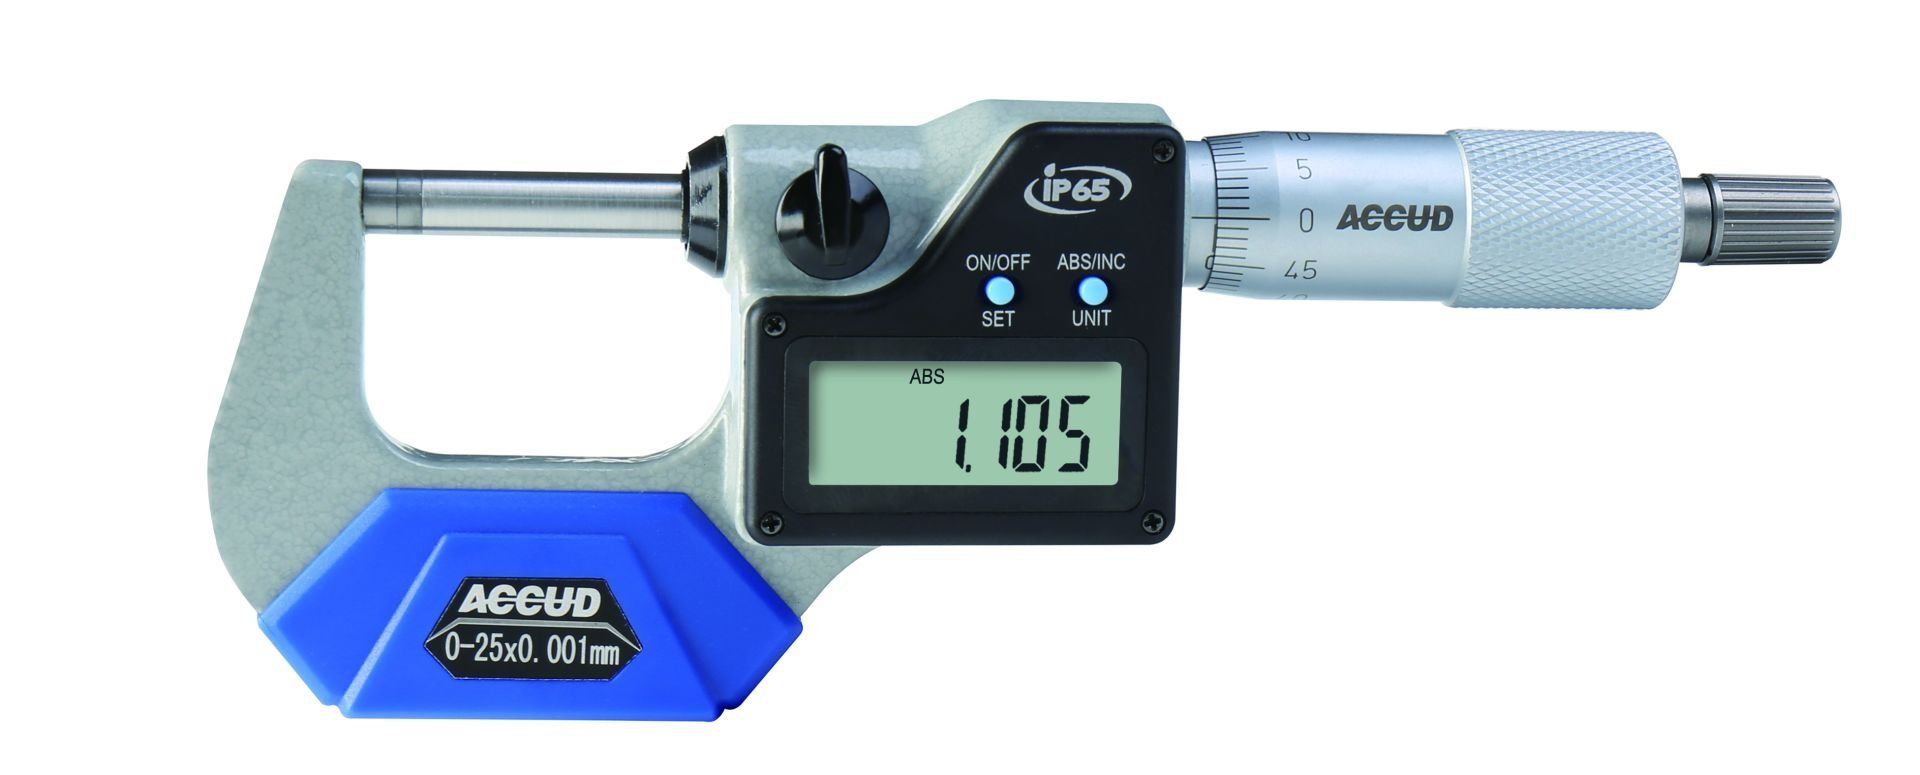 Accud IP65 Dijital Dış Çap Mikrometresi 313 Serisi 125-150 mm